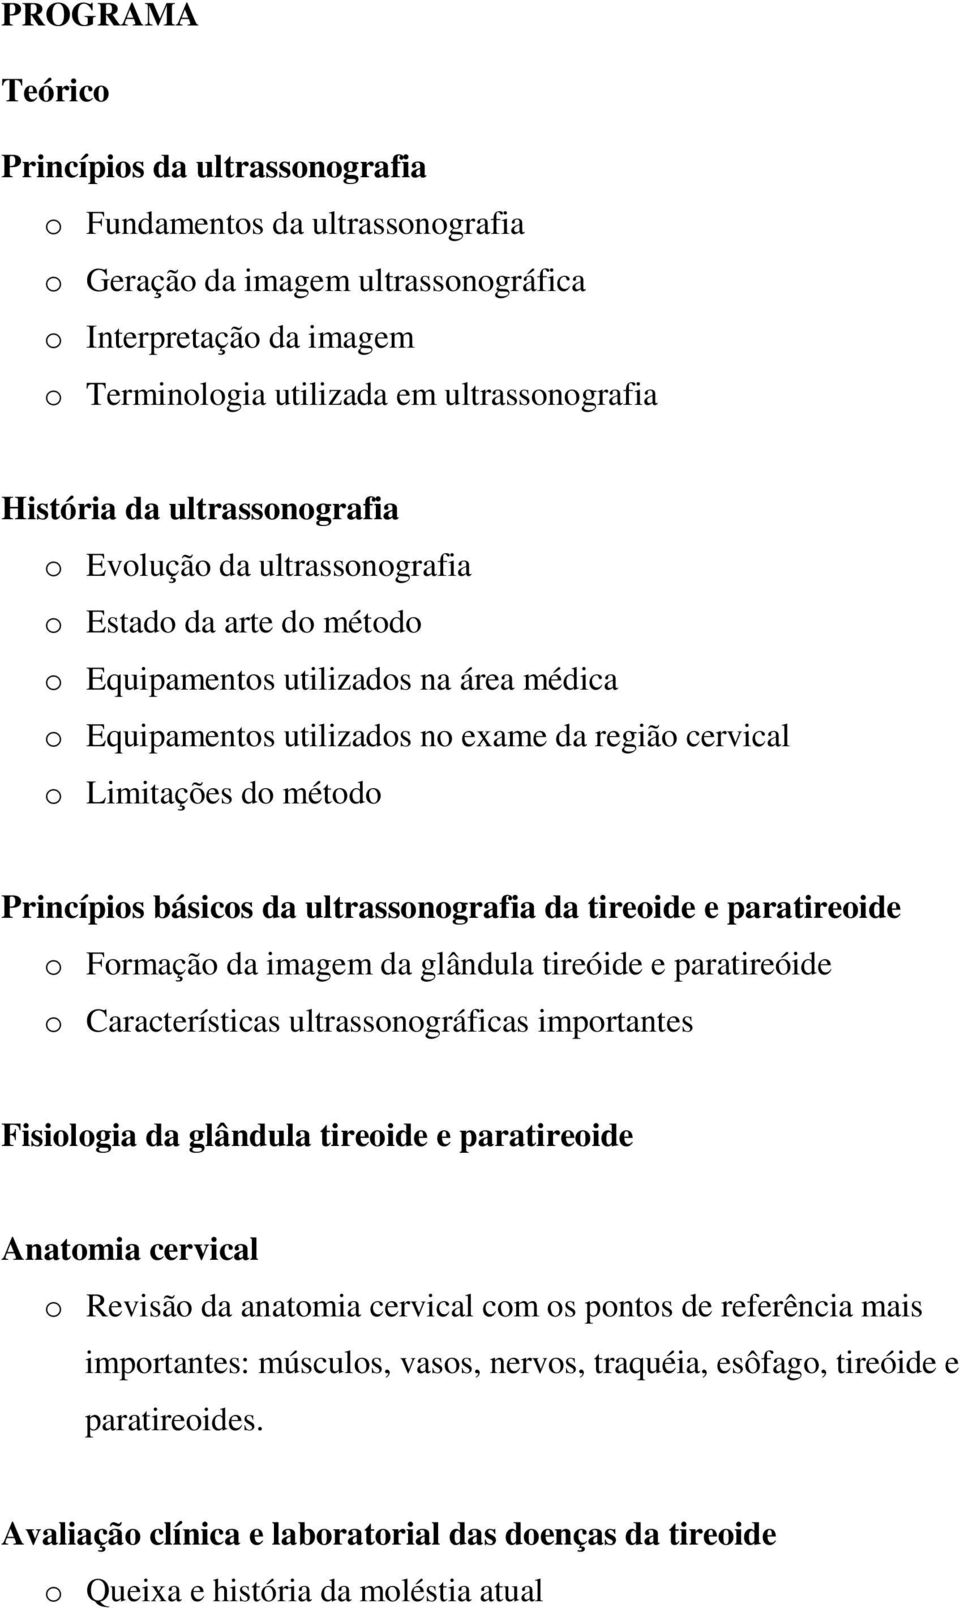 Princípios básicos da ultrassonografia da tireoide e paratireoide o Formação da imagem da glândula tireóide e paratireóide o Características ultrassonográficas importantes Fisiologia da glândula